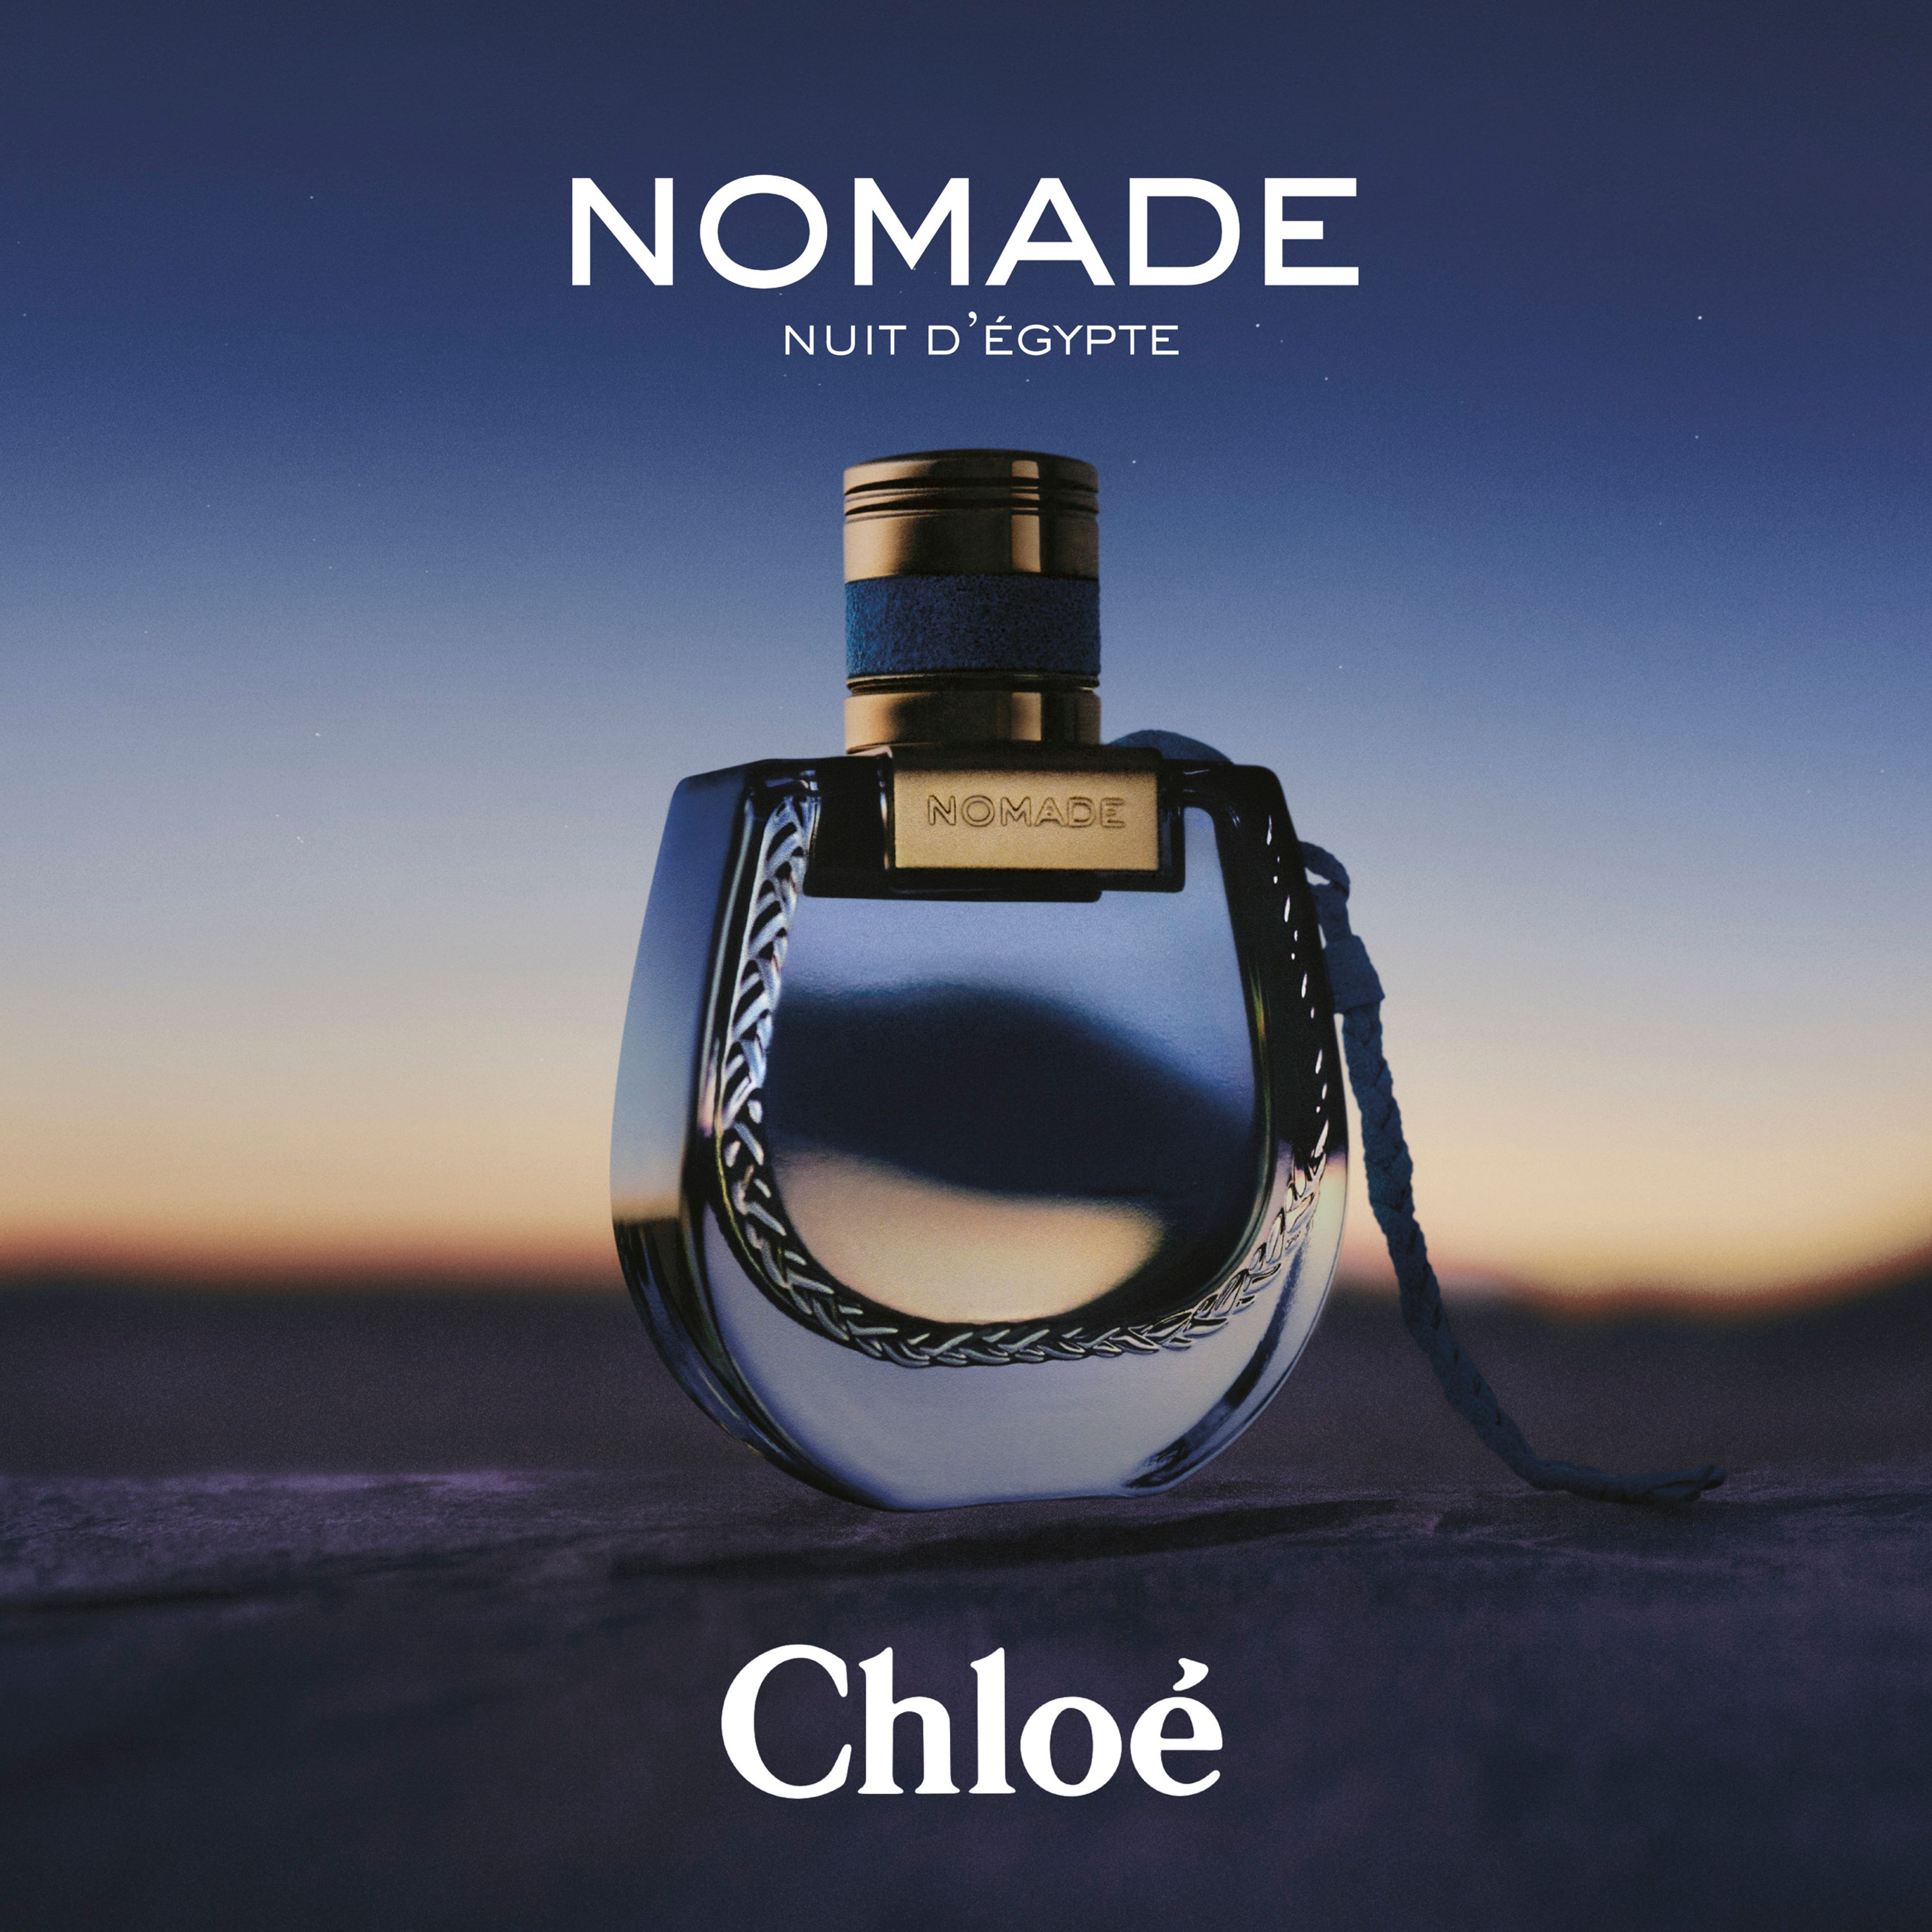 Chloé Chloé Nomade Nuit D’egypte Eau De Parfum 6